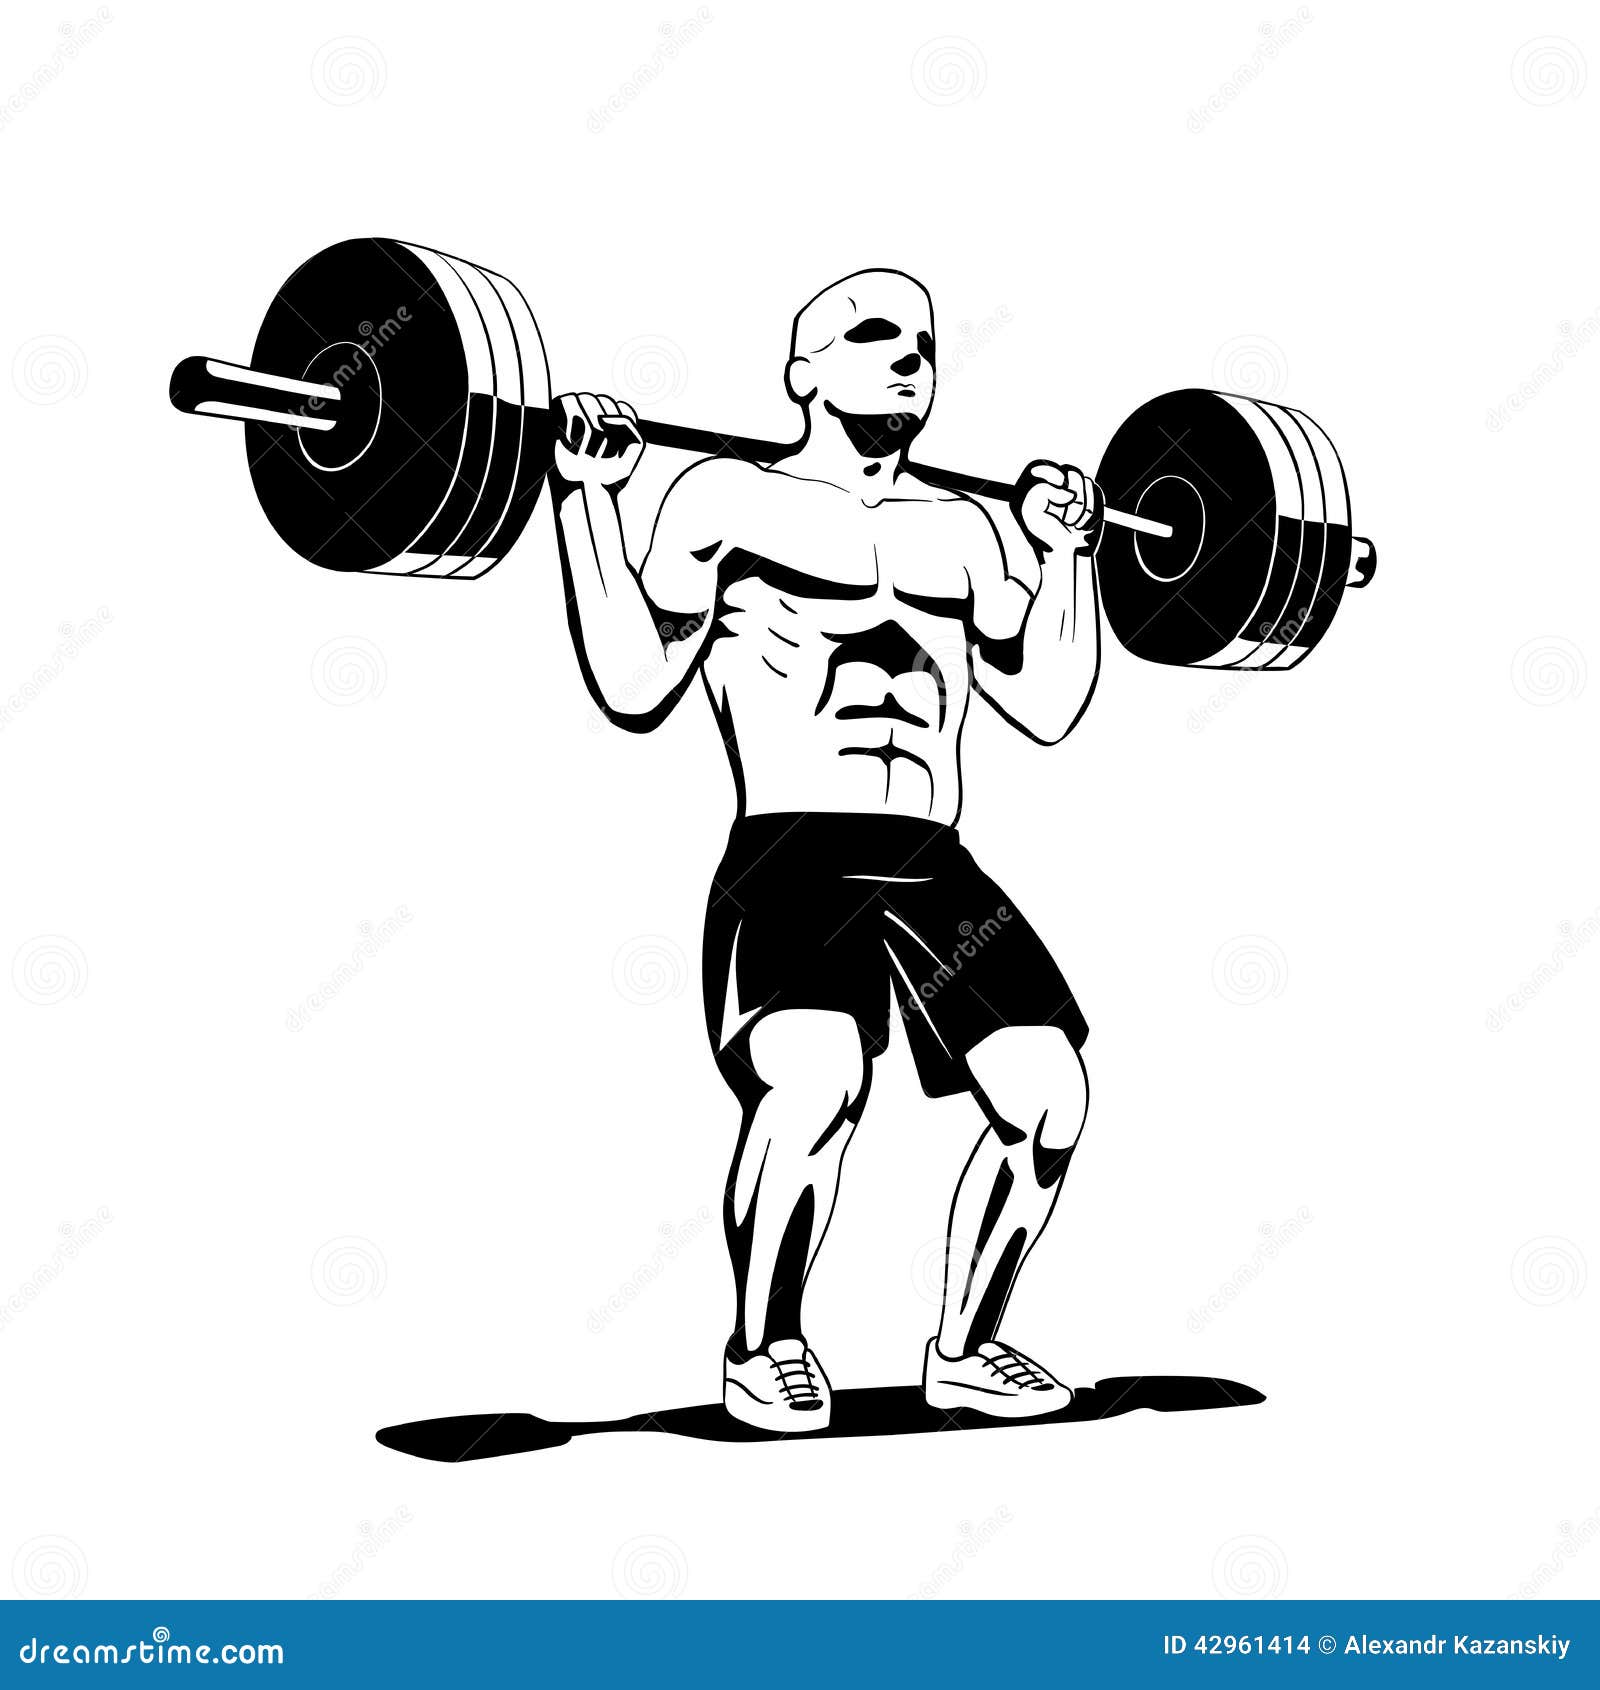 Squat stock vector. Image of cartoon, power, adult, effort - 42961414